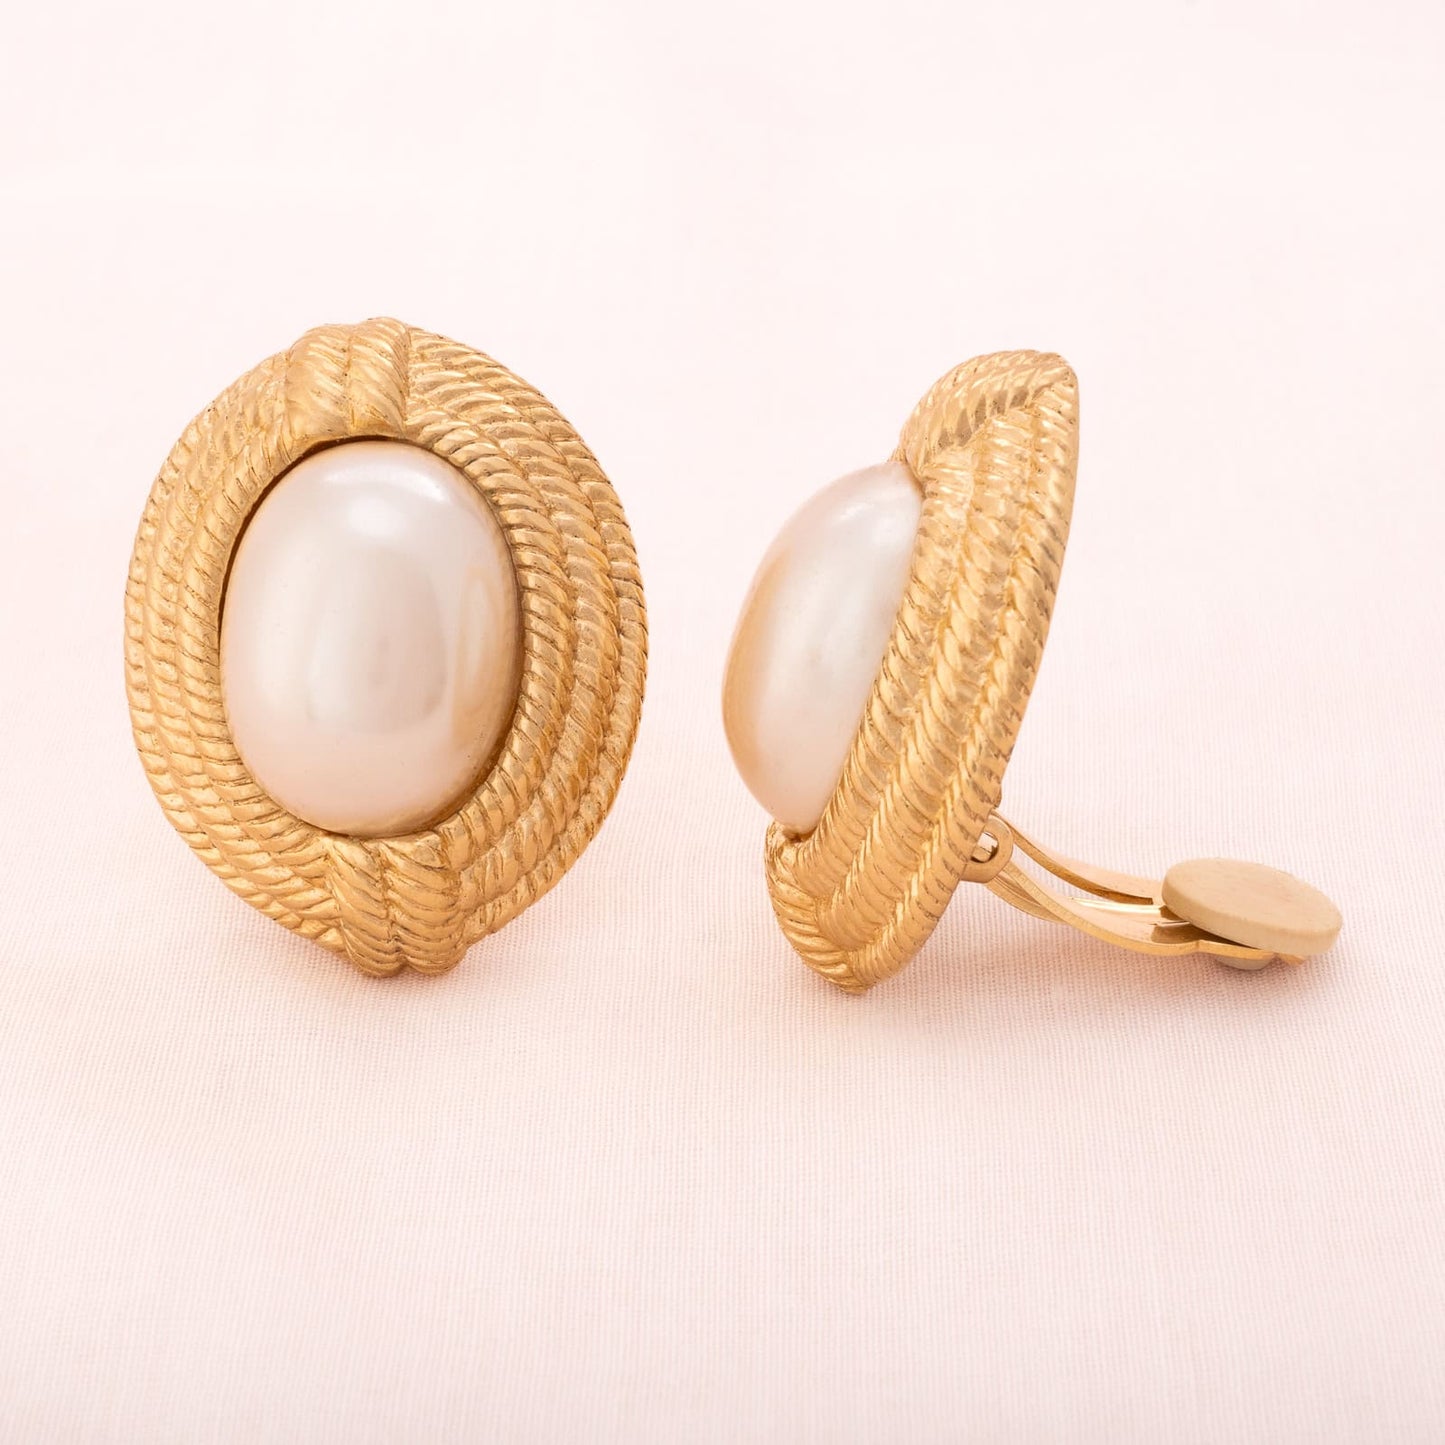 Givenchy-große-ovale-Perlen-Ohrclips-goldfarbene-Fassung-in-Seilstruktur-seitlich